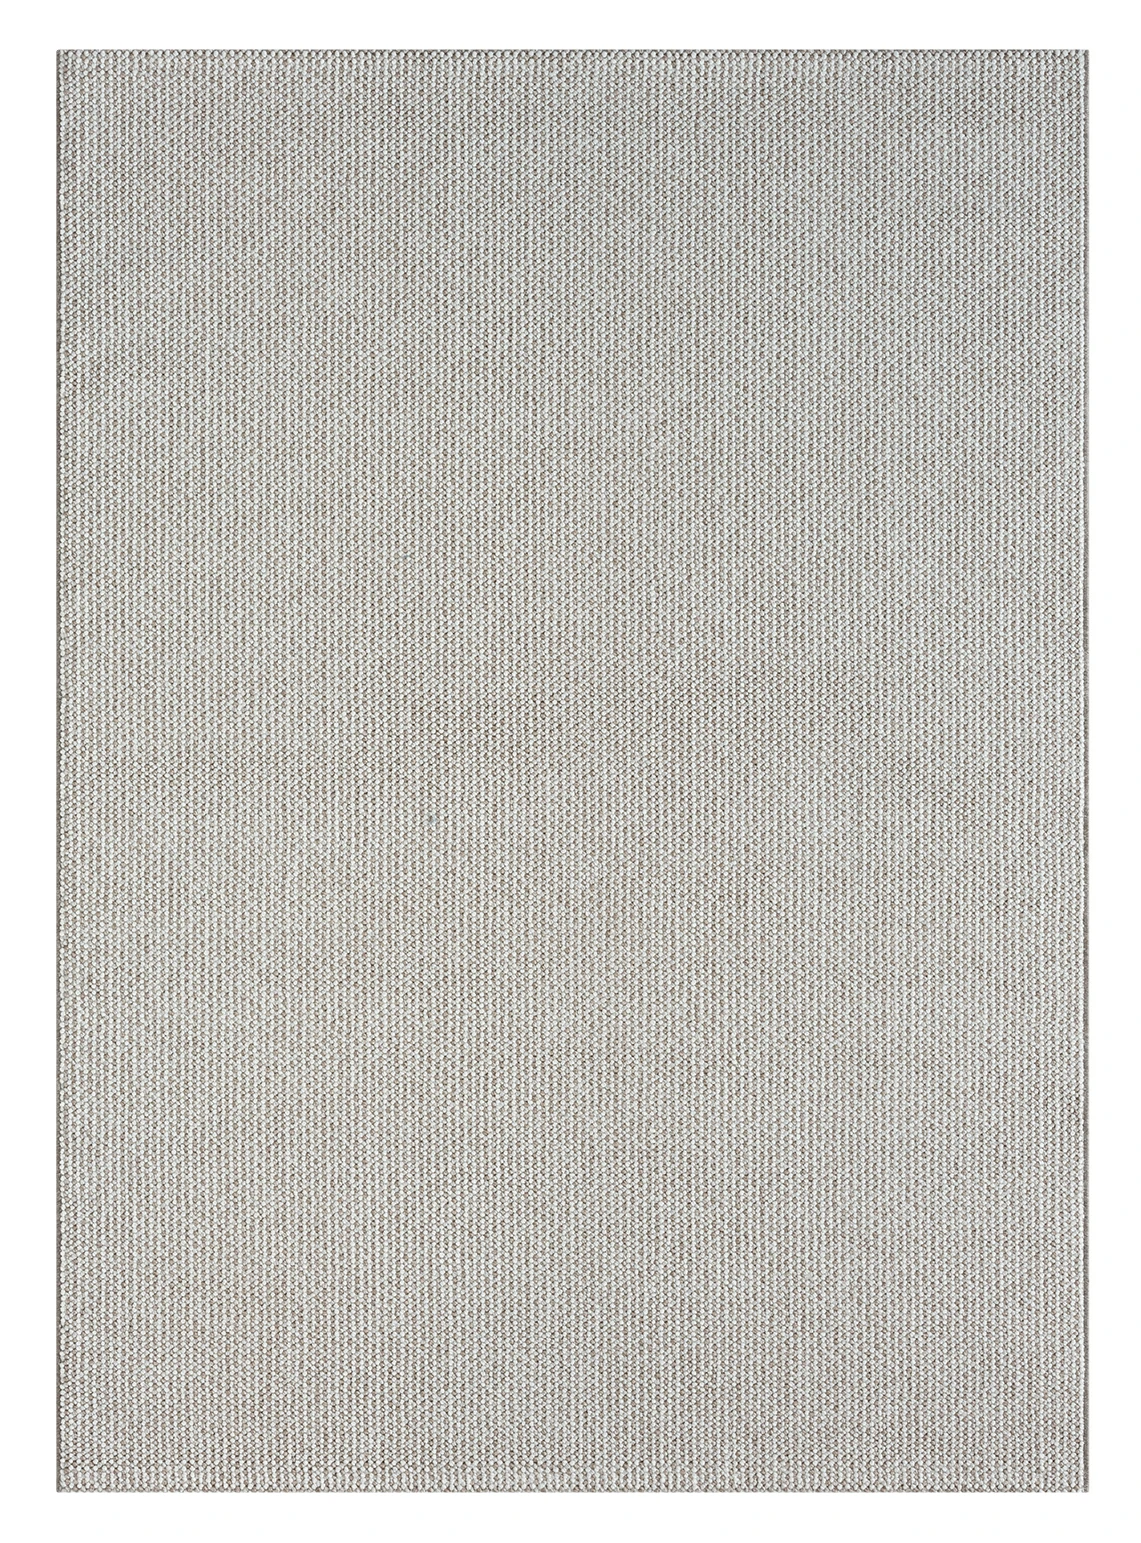 שטיח דגם CALIFORNIA לולאות צבע בז' לבן  : Thumb 3